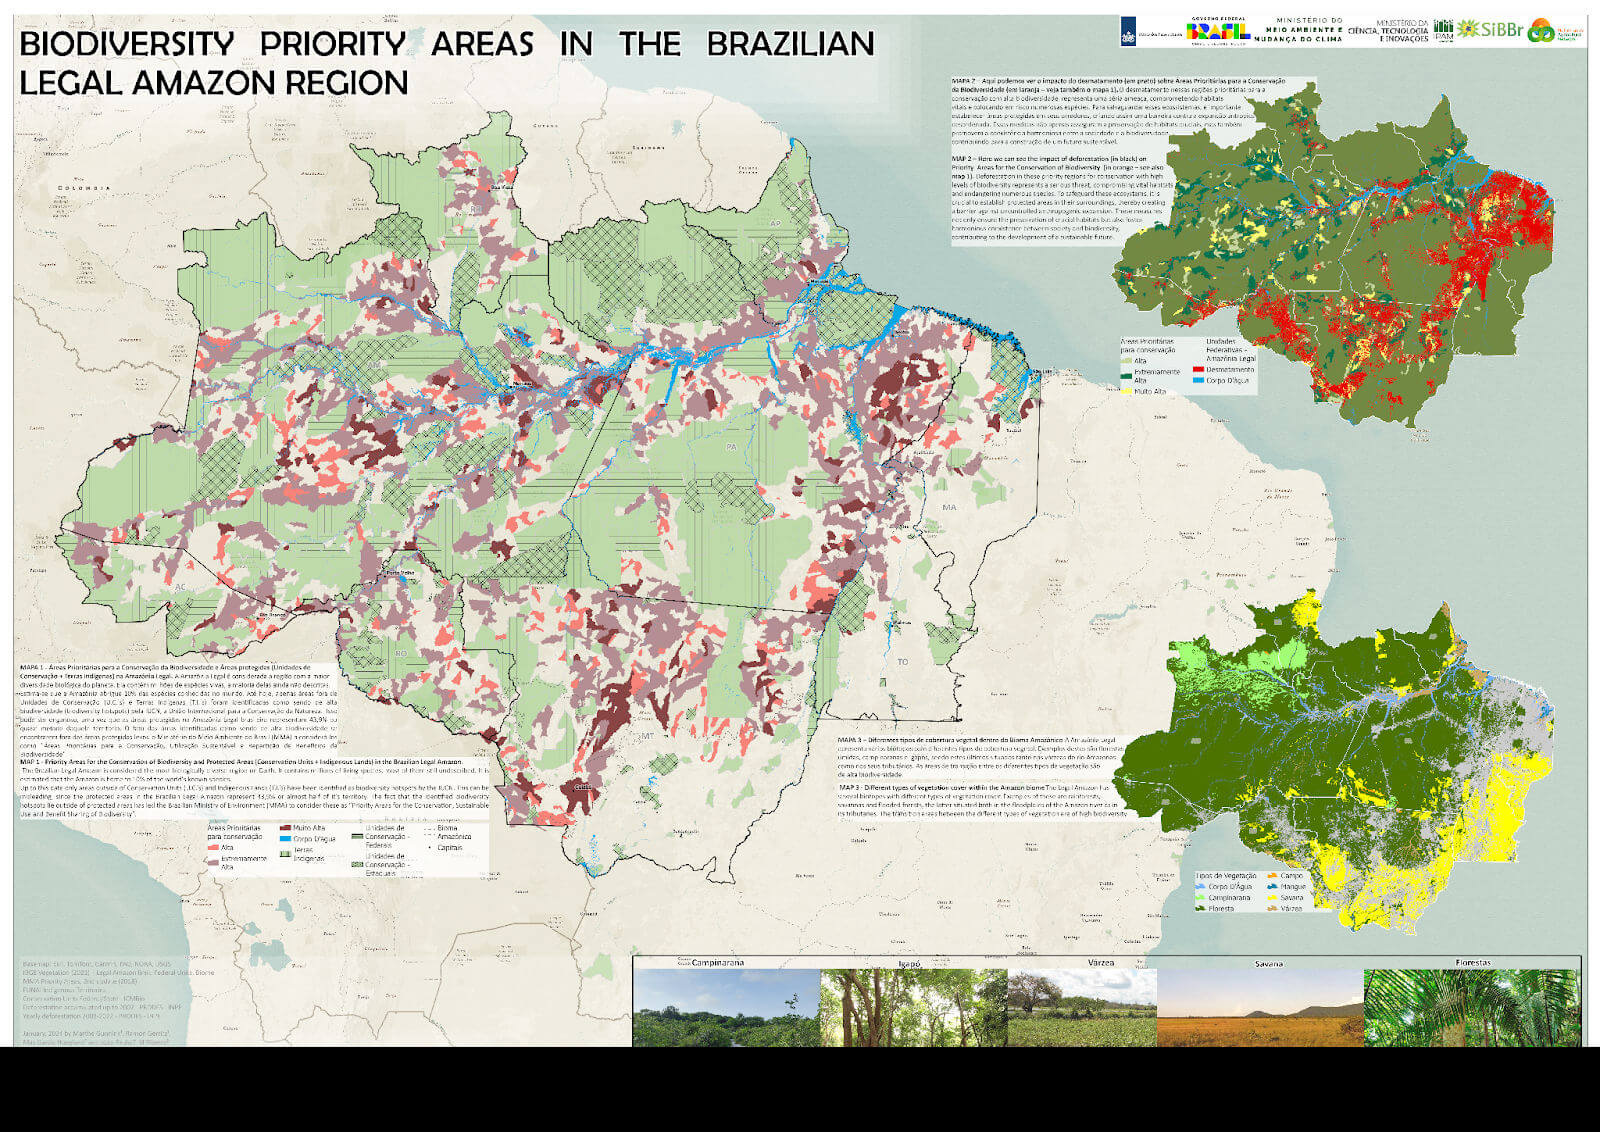 mapa revela vulnerabilidade de áreas críticas na amazônia legal